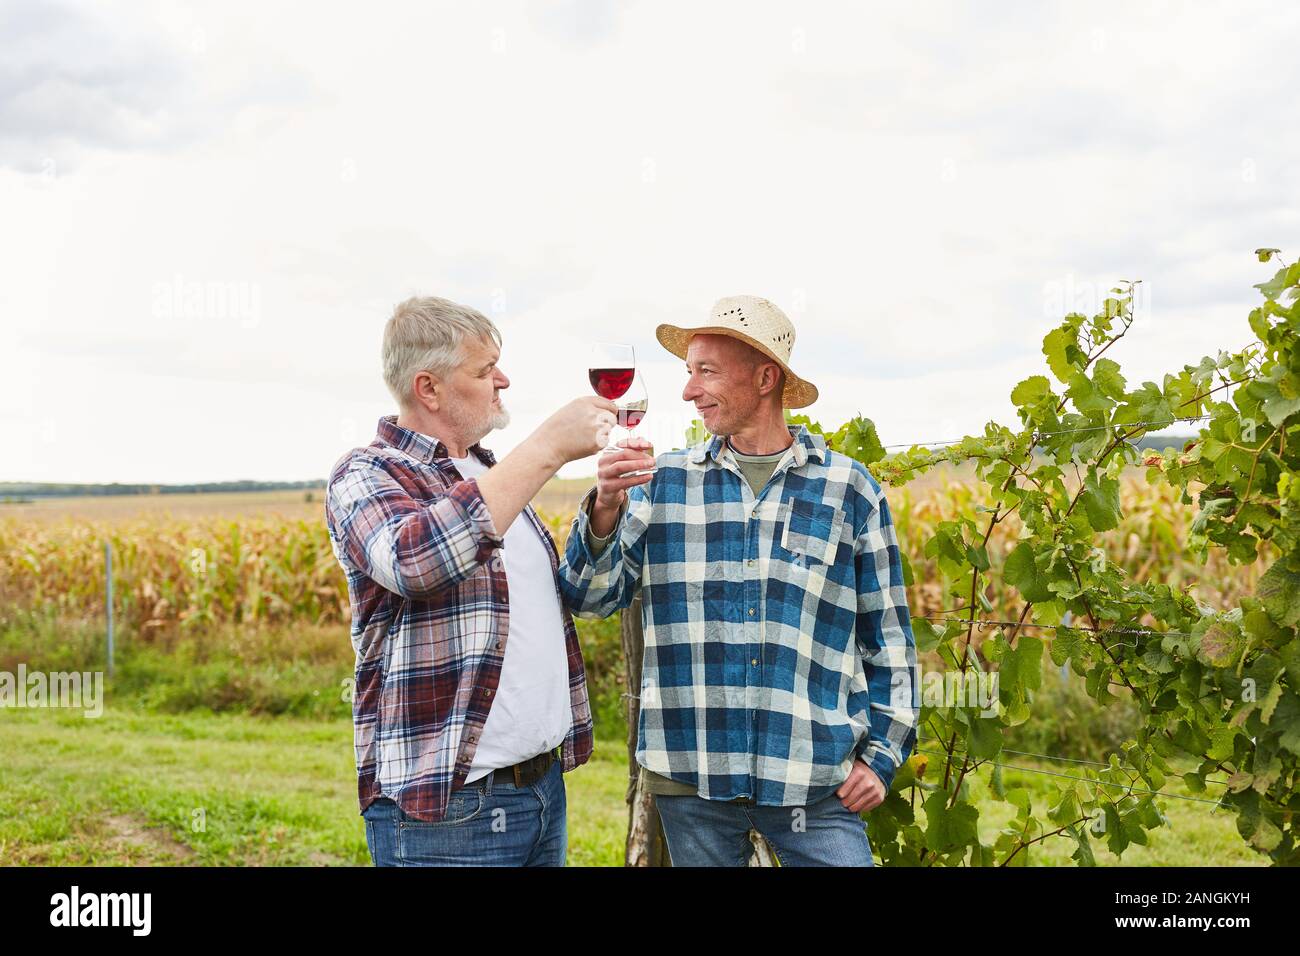 Deux vignerons ou aides récolte boire un verre de vin rouge ensemble dans le vignoble Banque D'Images